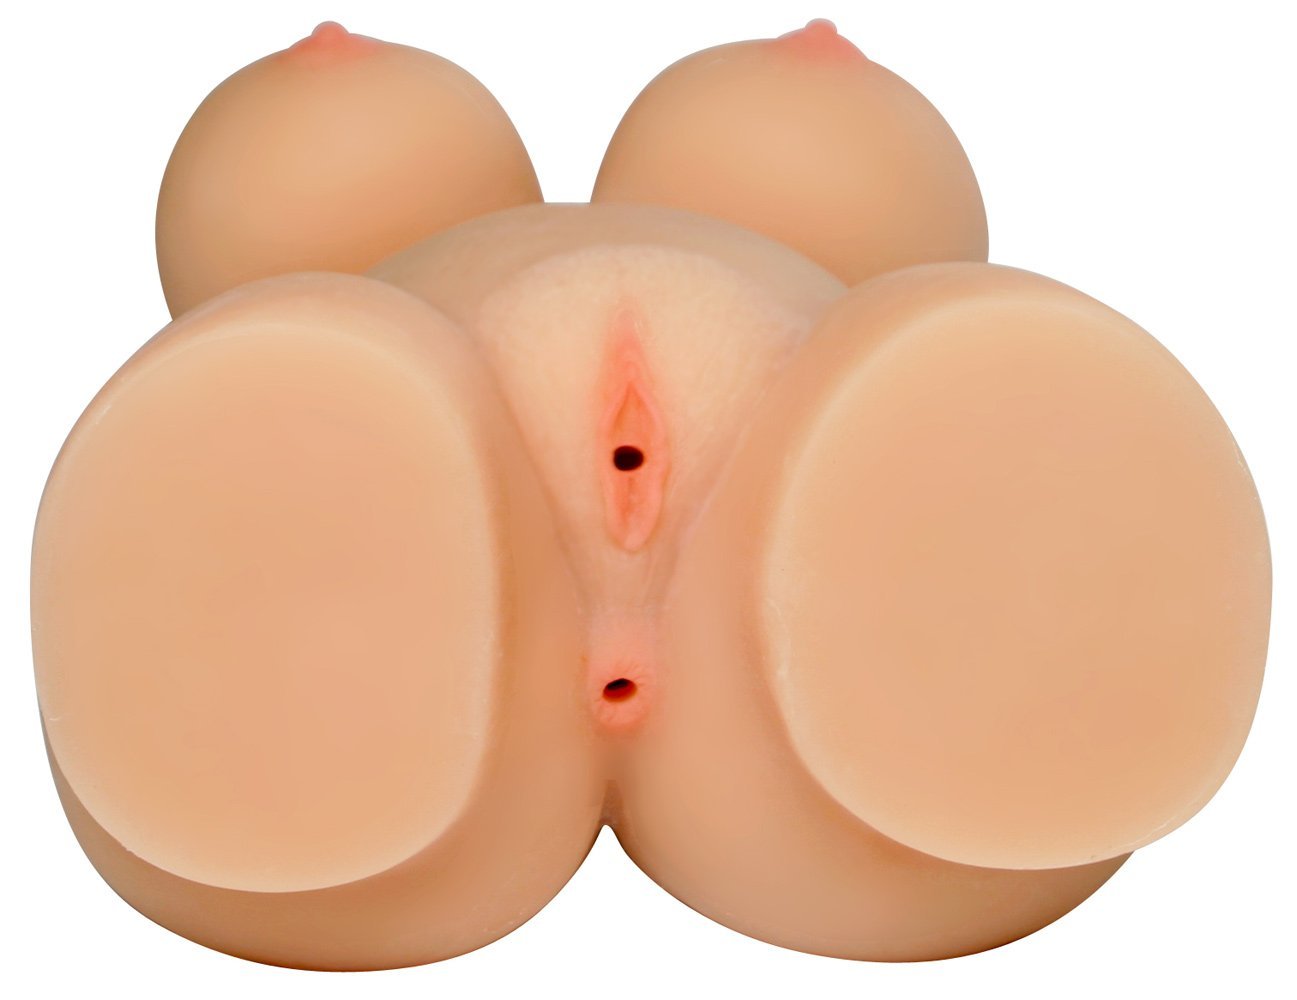  Review Búp bê silicon ngực tròn căng mông mẩy hàng mới về